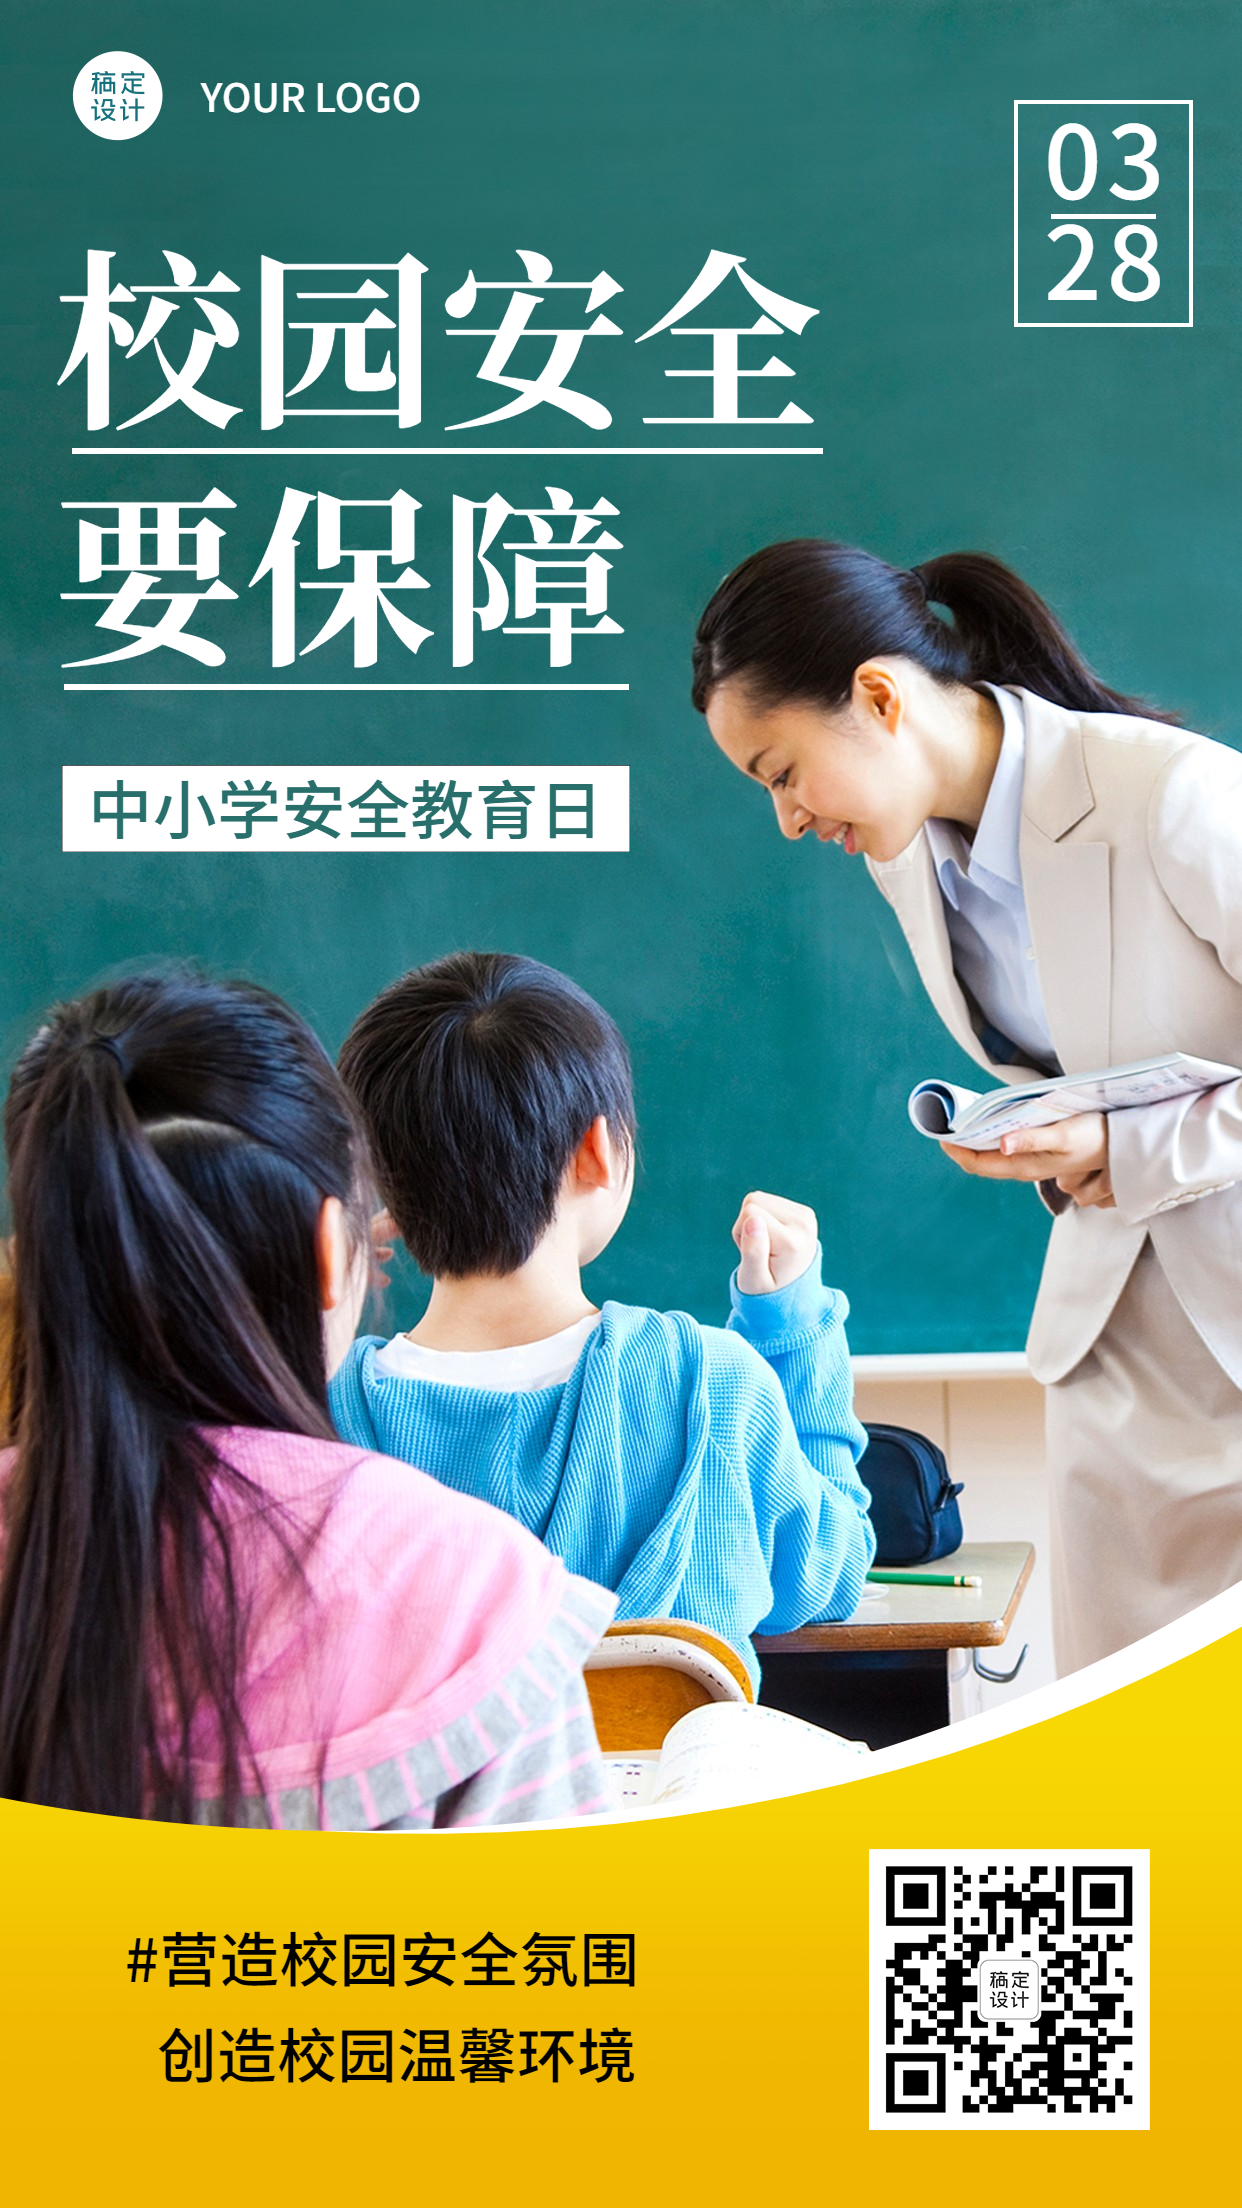 中小学安全教育日节日宣传实景手机海报预览效果